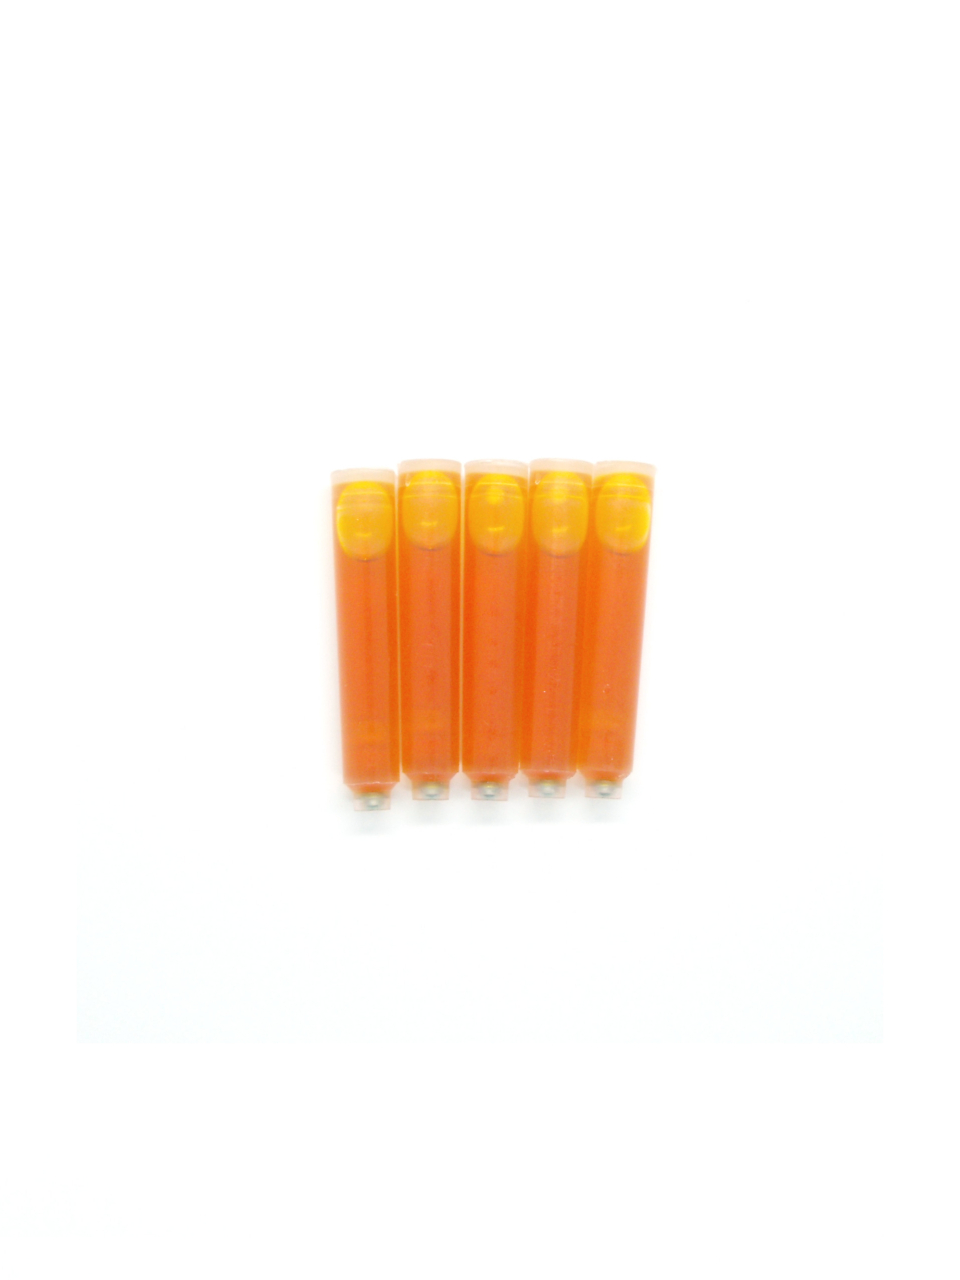 PenConverter Ink Cartridges For Levenger Fountain Pens (Yellow)